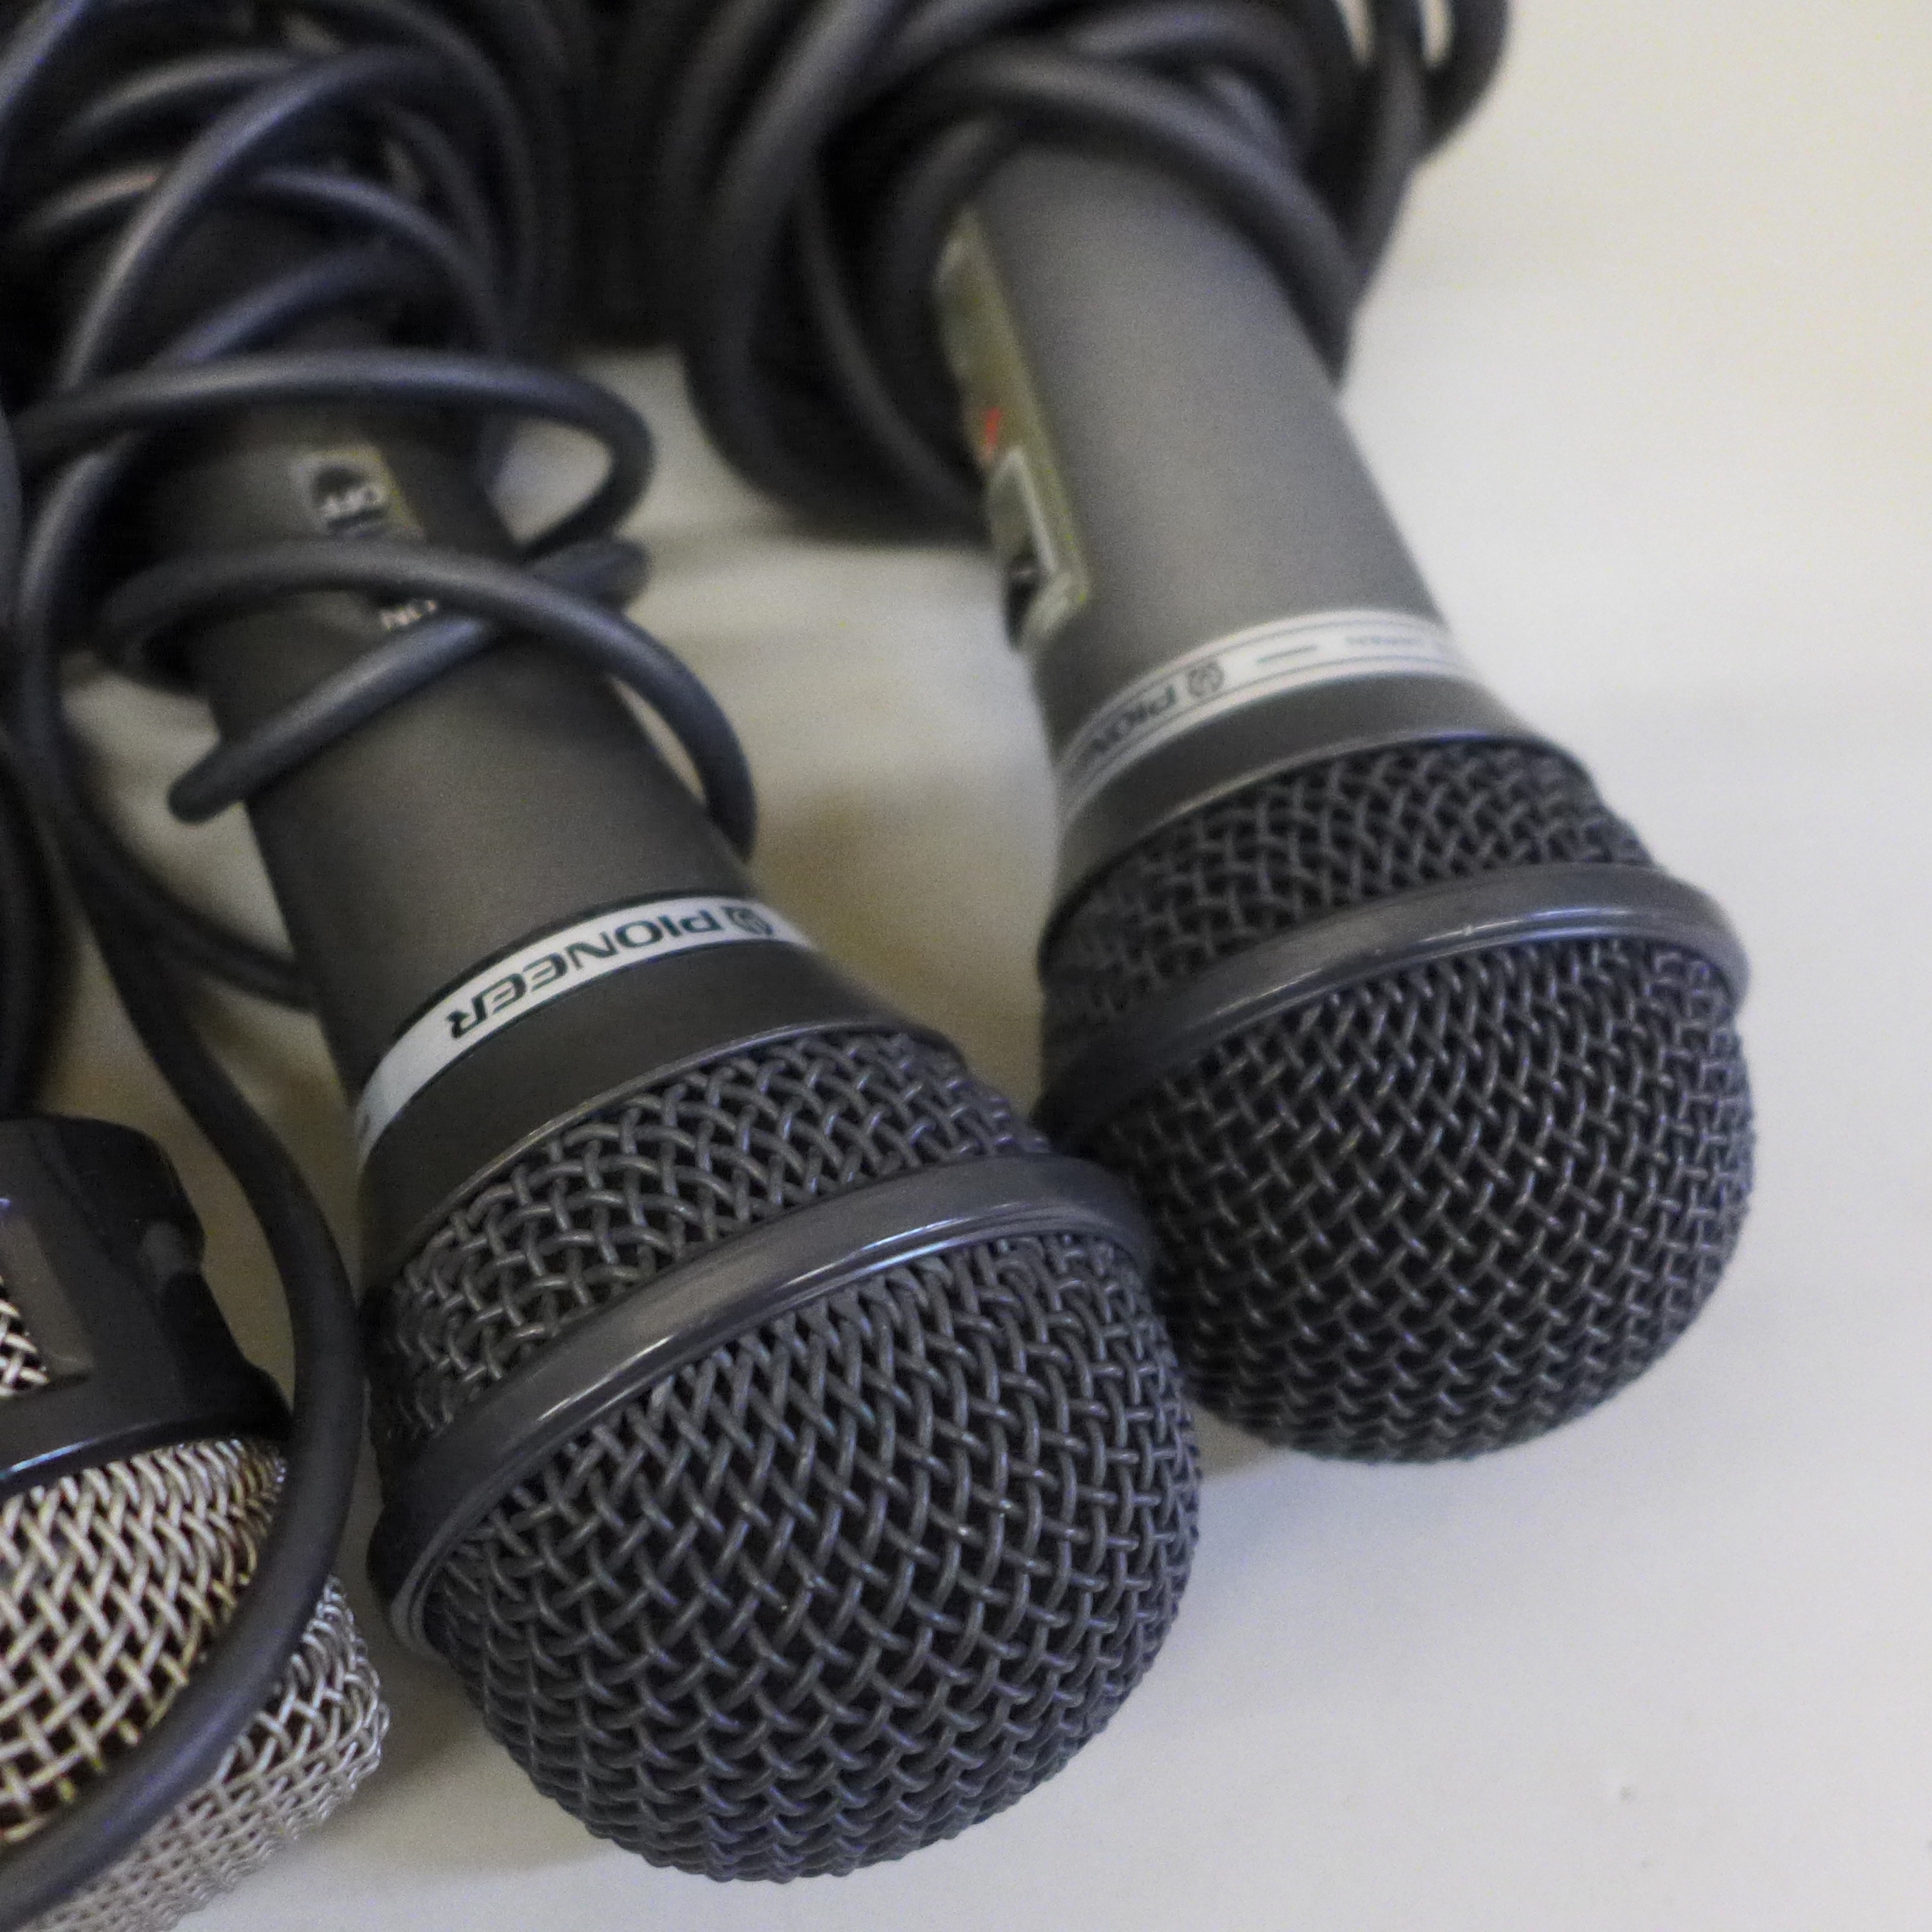 10 x microphones including vintage, Pioneer DM-C820, Philips SBC FD140, Pioneer DM-23, Philips SBC - Image 3 of 6